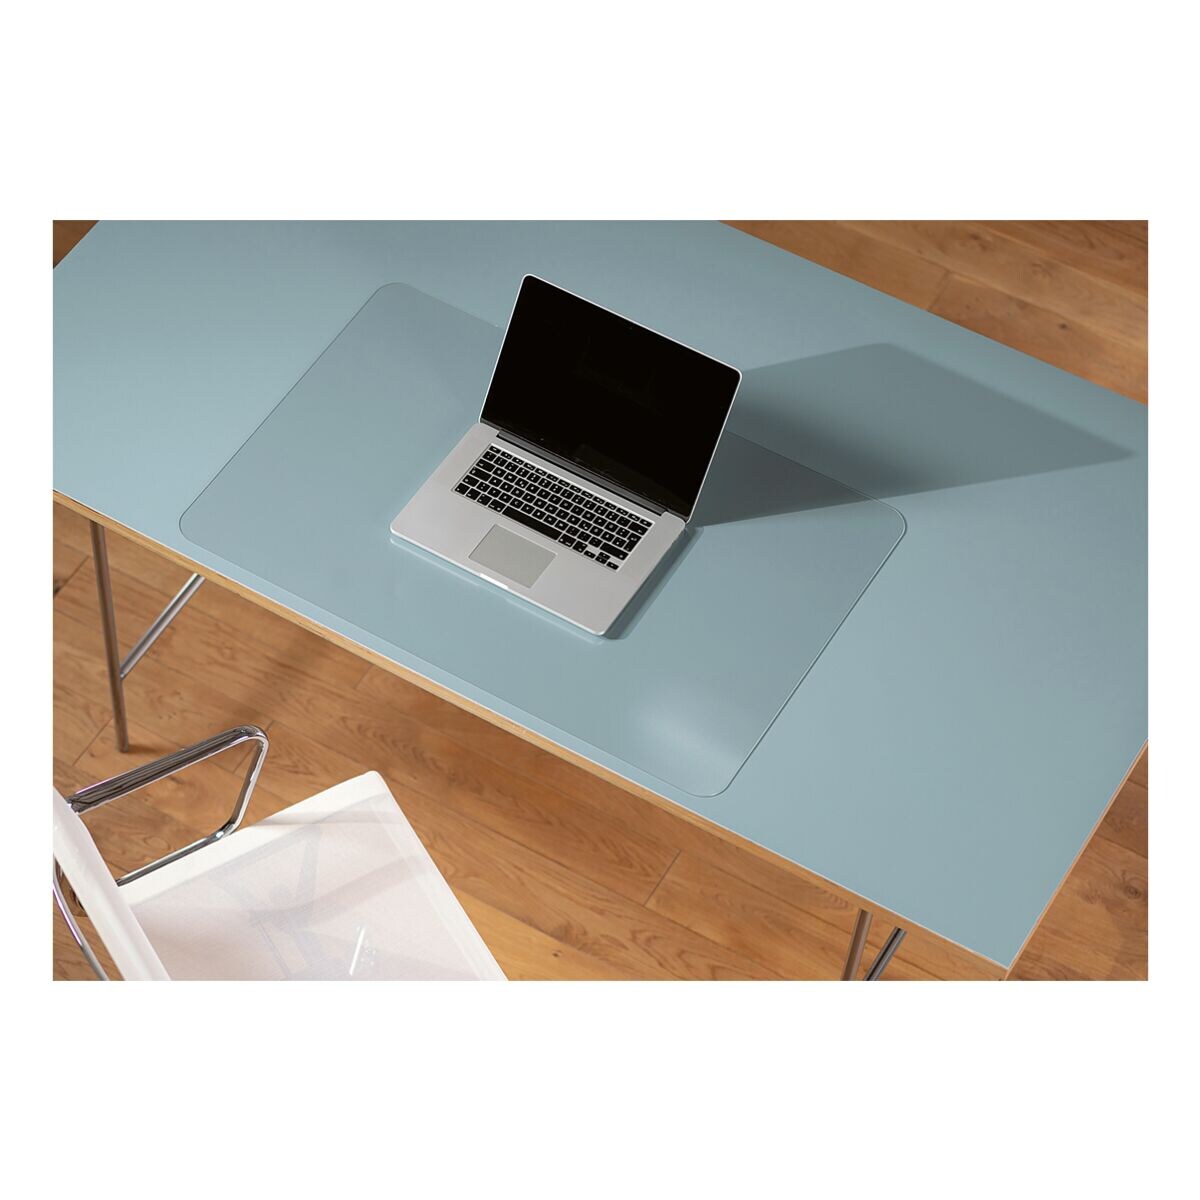 RS Office Products Beschermmat Durasens Soft voor tafels 60 cm x 50 cm